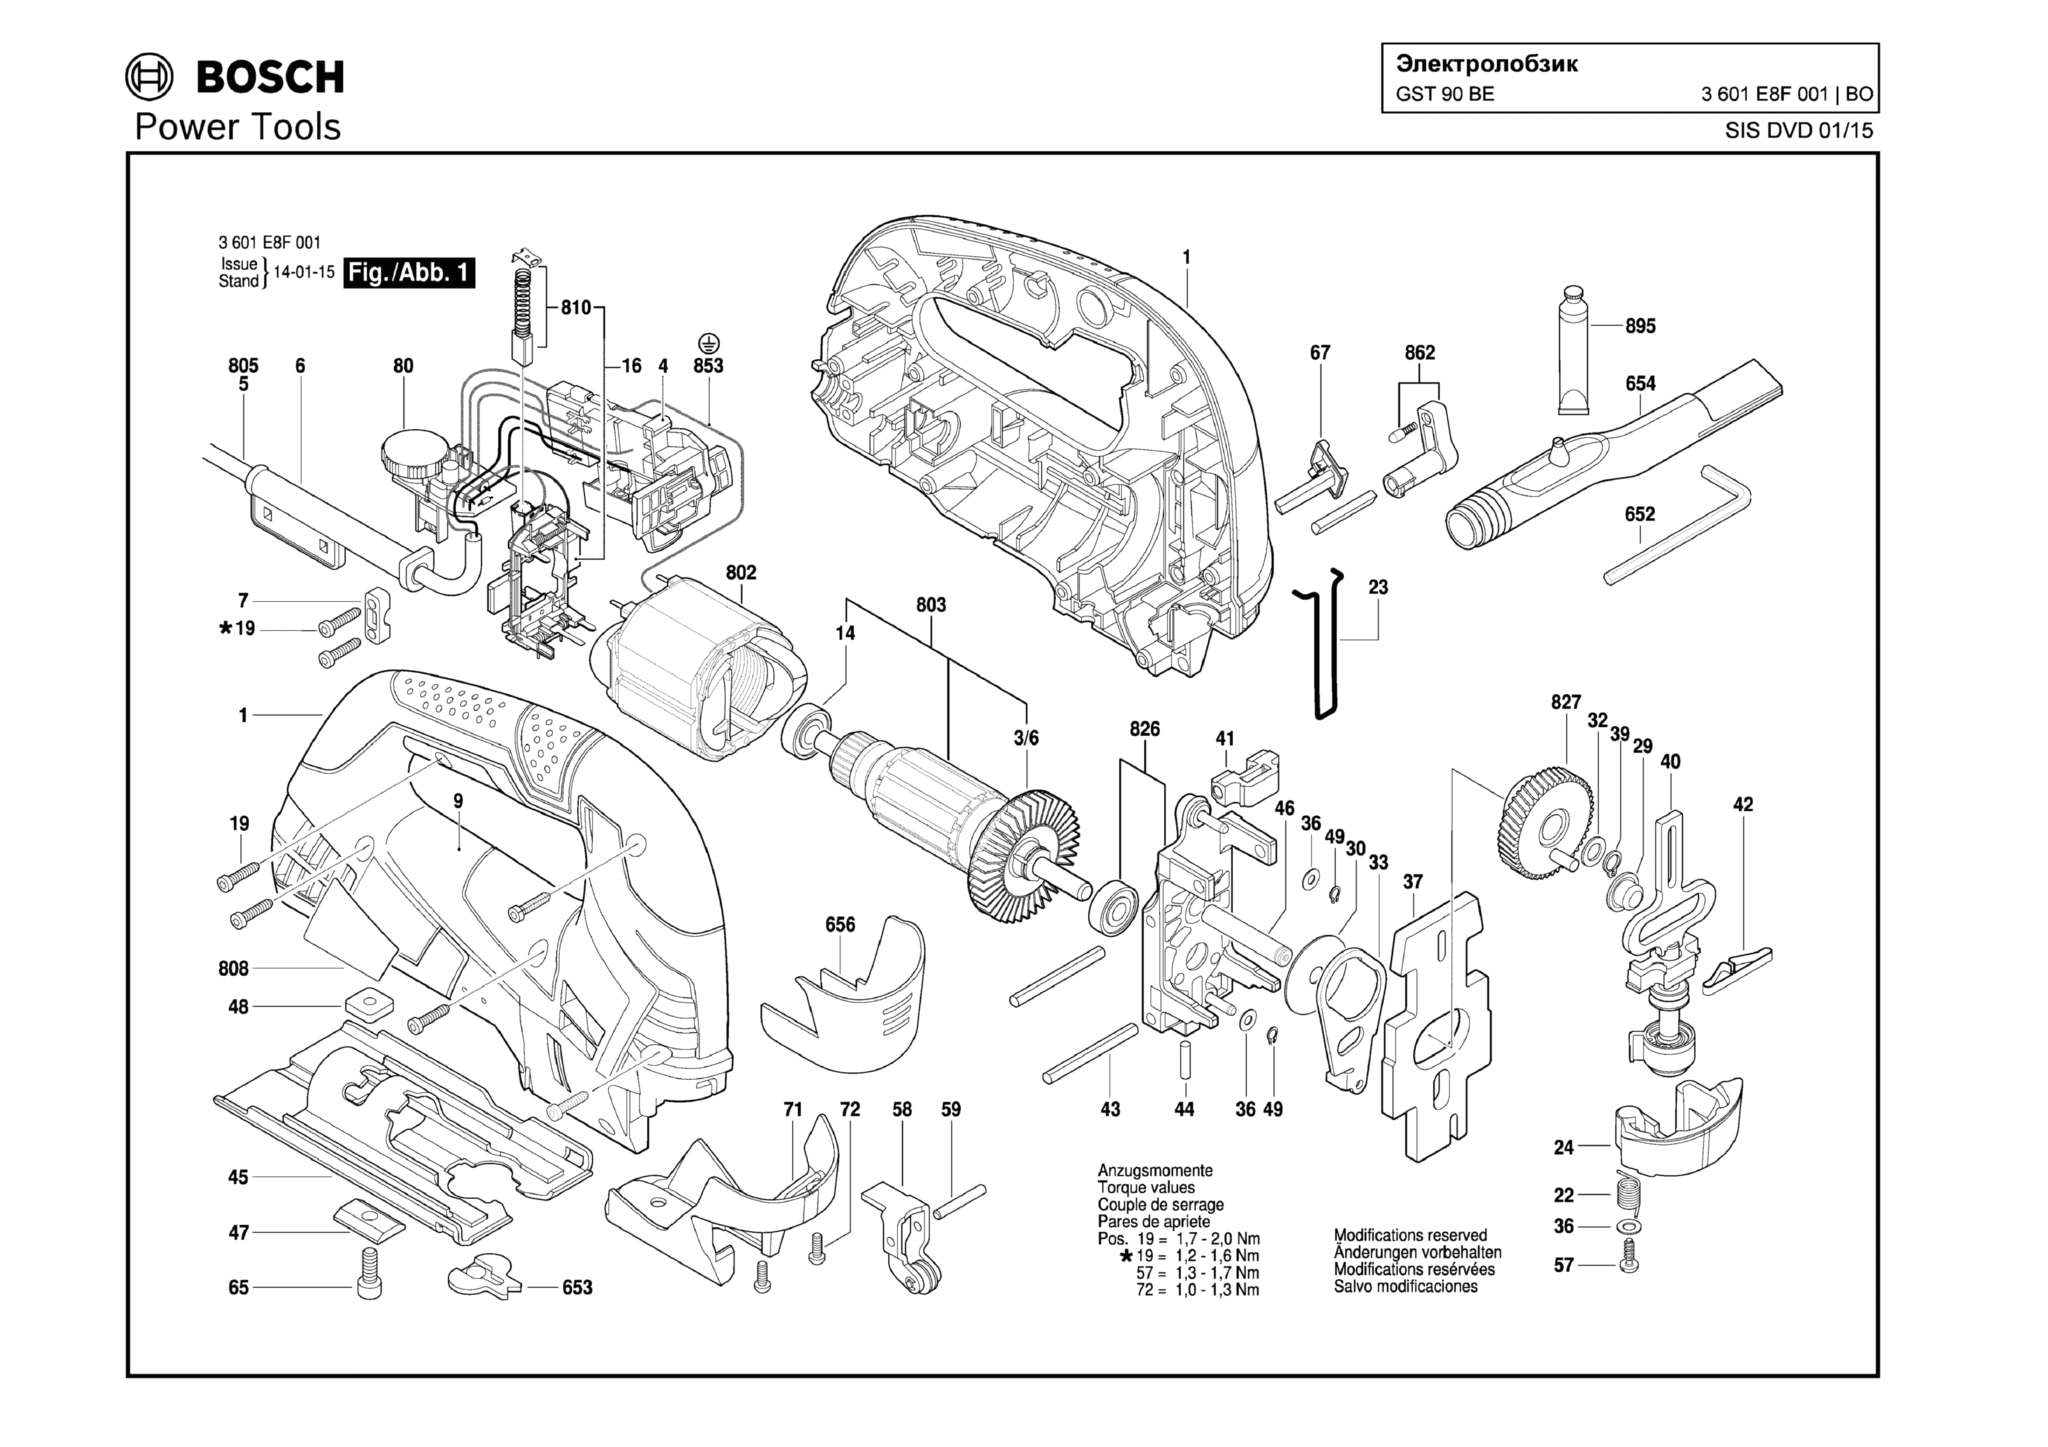 Запчасти, схема и деталировка Bosch GST 90 BE (ТИП 3601E8F001)